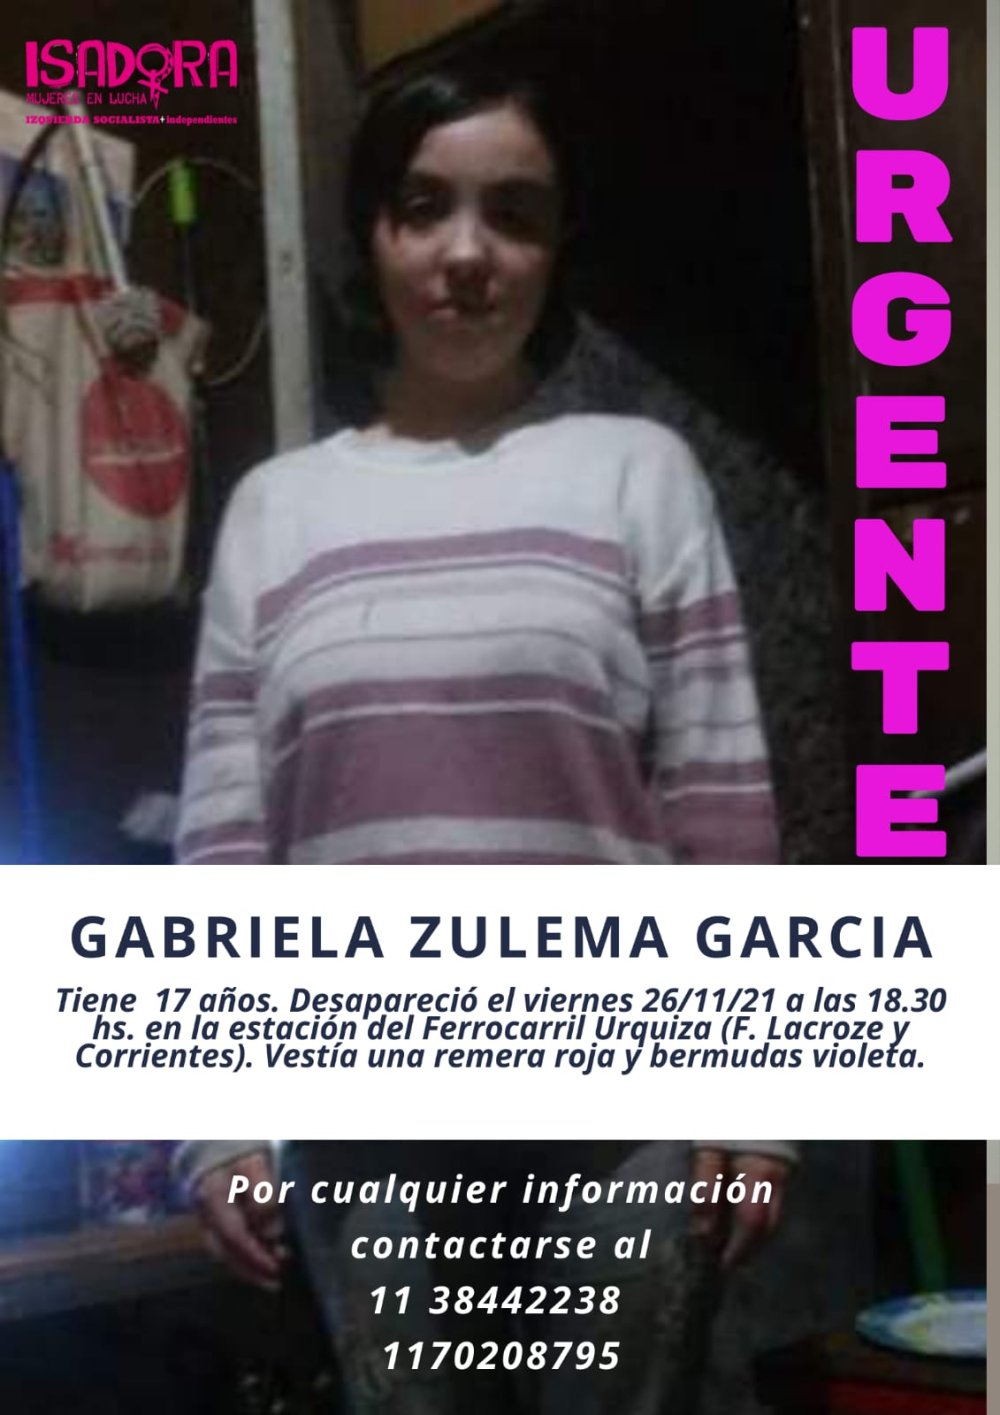 Buscamos a Gabriela Zulema García, desaparecida el viernes 26/11/21 en la zona de Chacarita